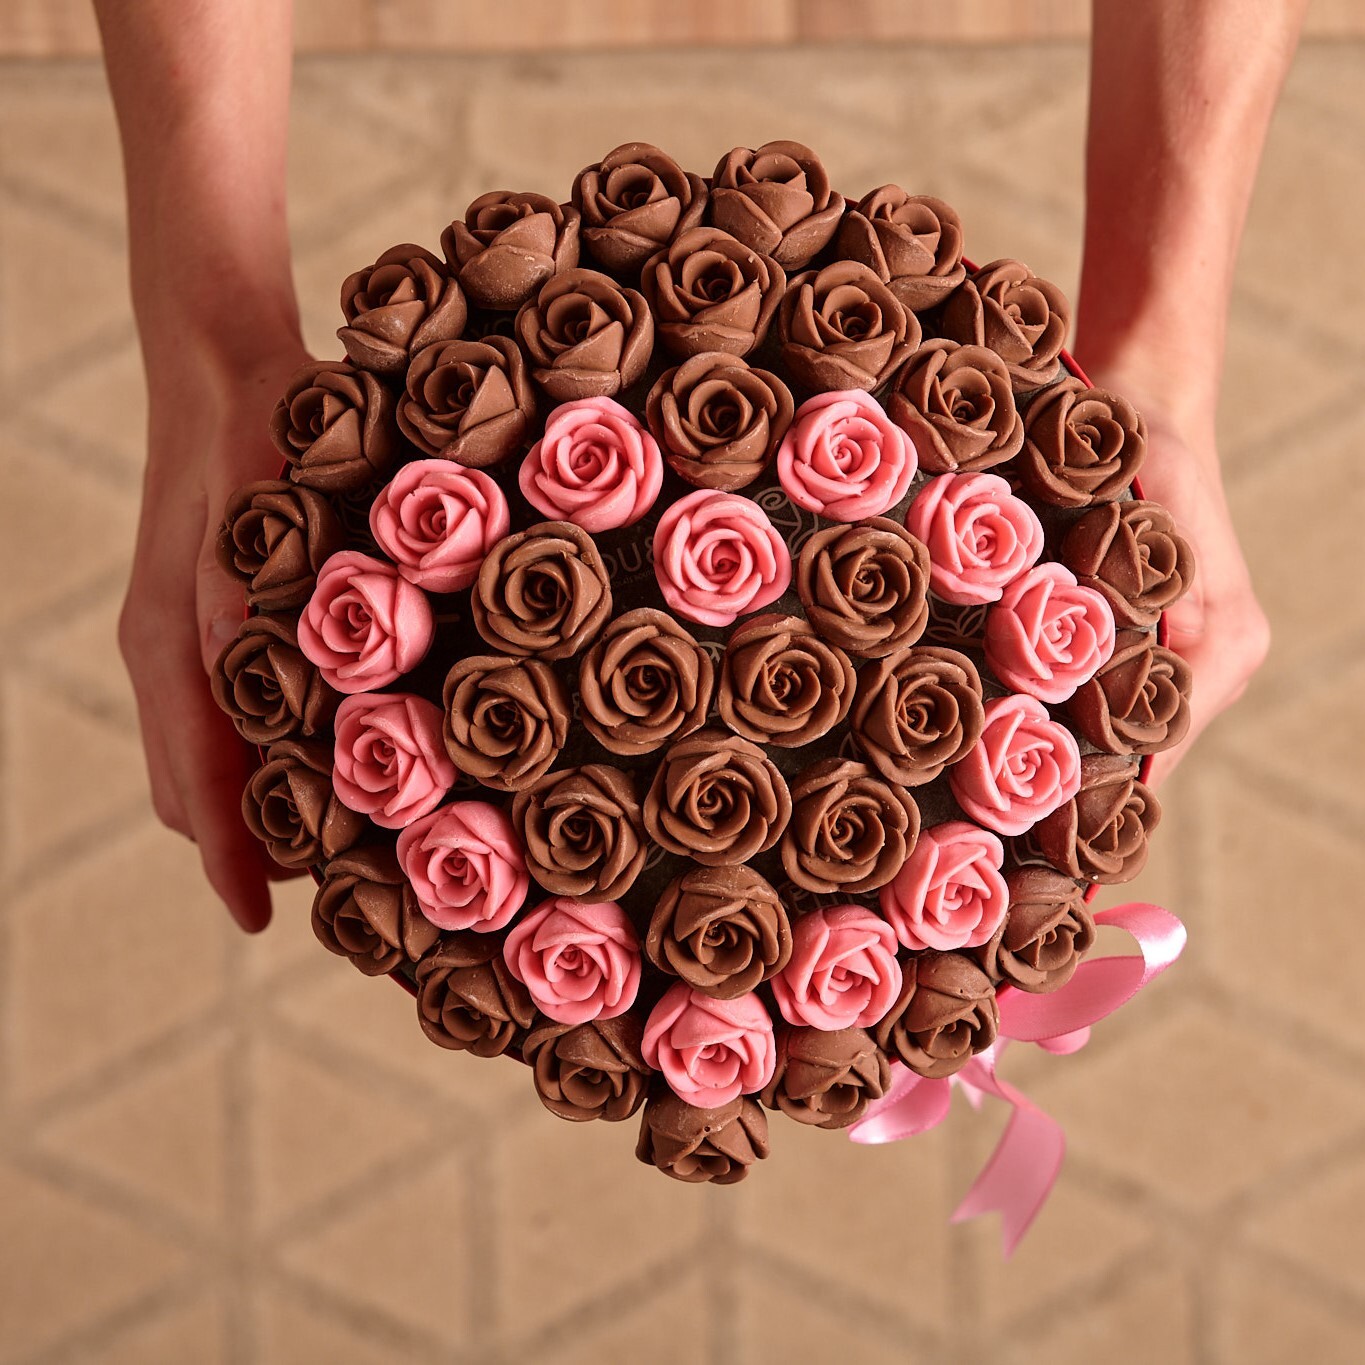 Шоколадные розы в шляпной коробке